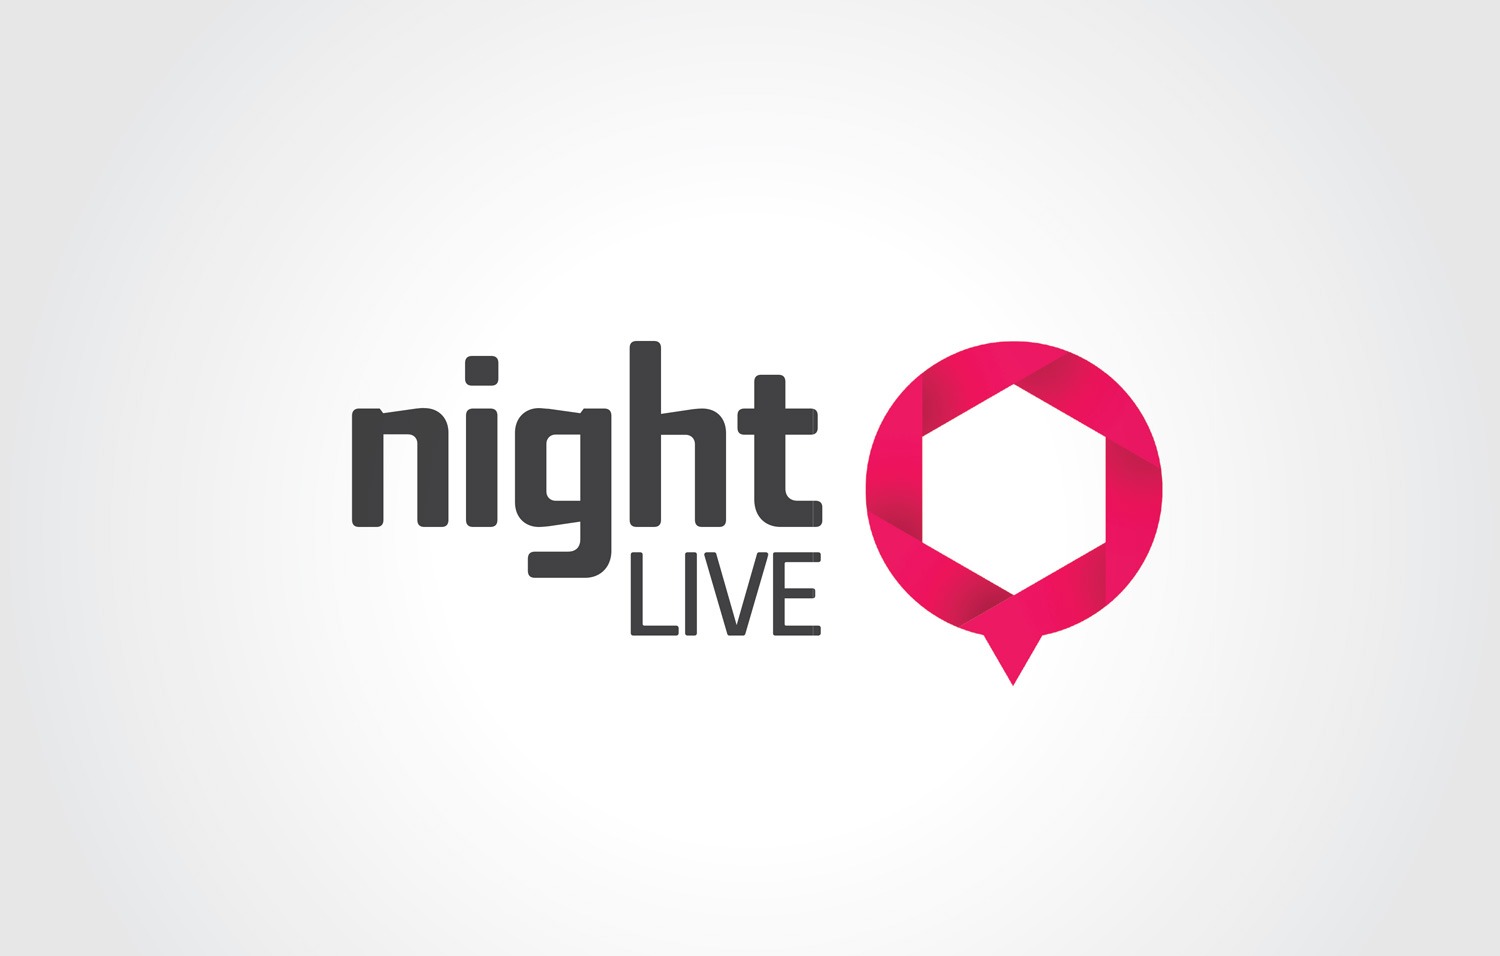 comunicação visual - night live marcas 7